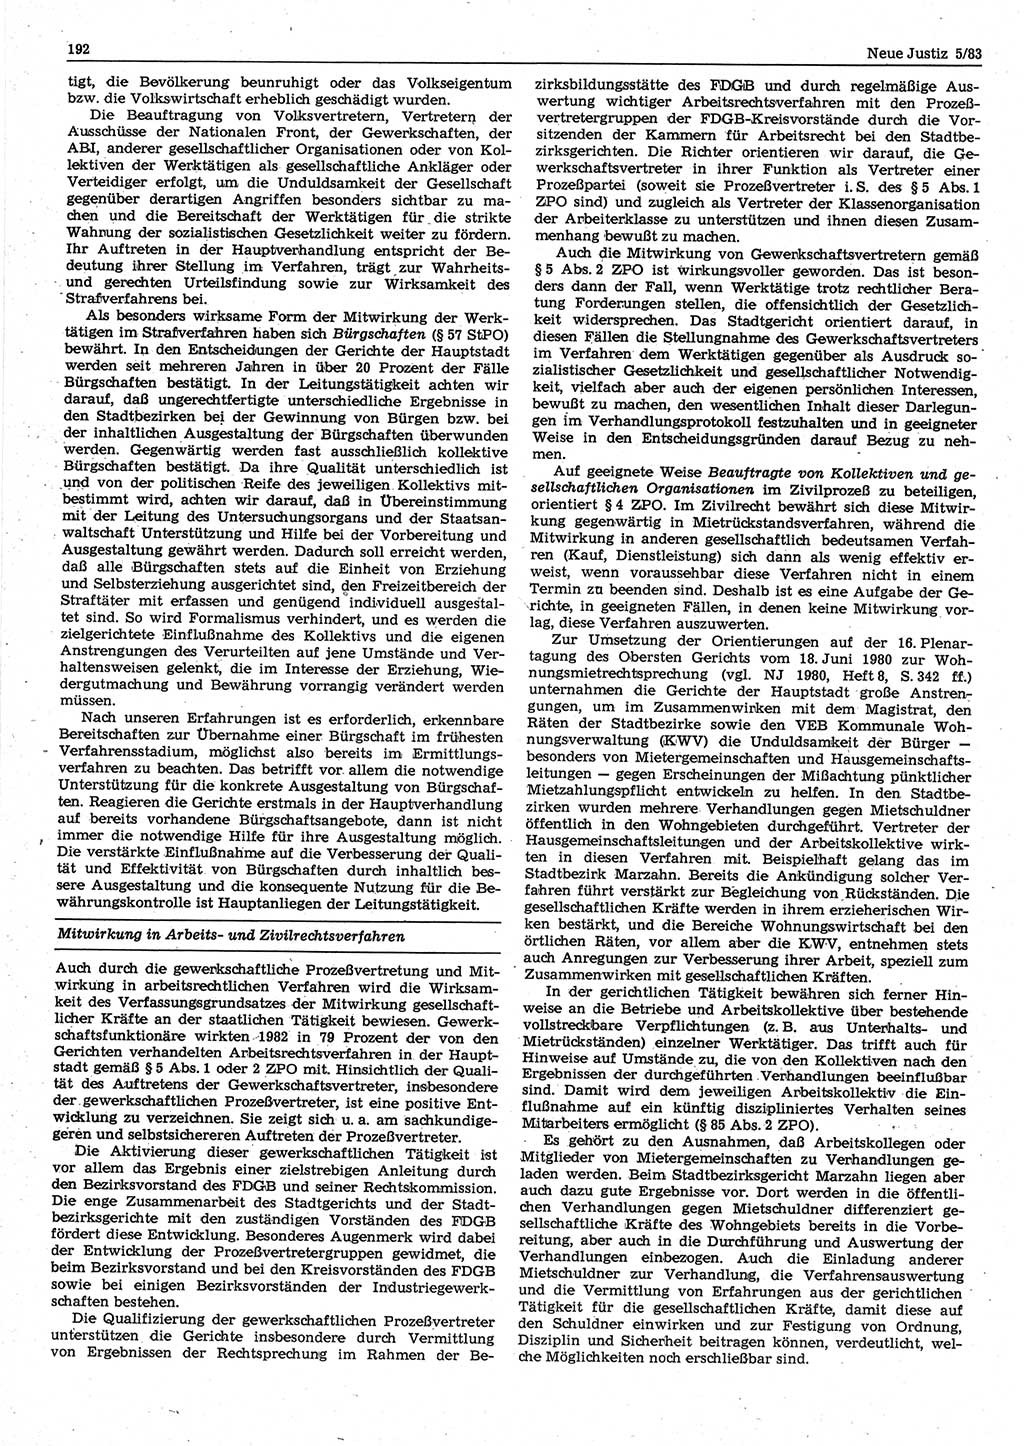 Neue Justiz (NJ), Zeitschrift für sozialistisches Recht und Gesetzlichkeit [Deutsche Demokratische Republik (DDR)], 37. Jahrgang 1983, Seite 192 (NJ DDR 1983, S. 192)